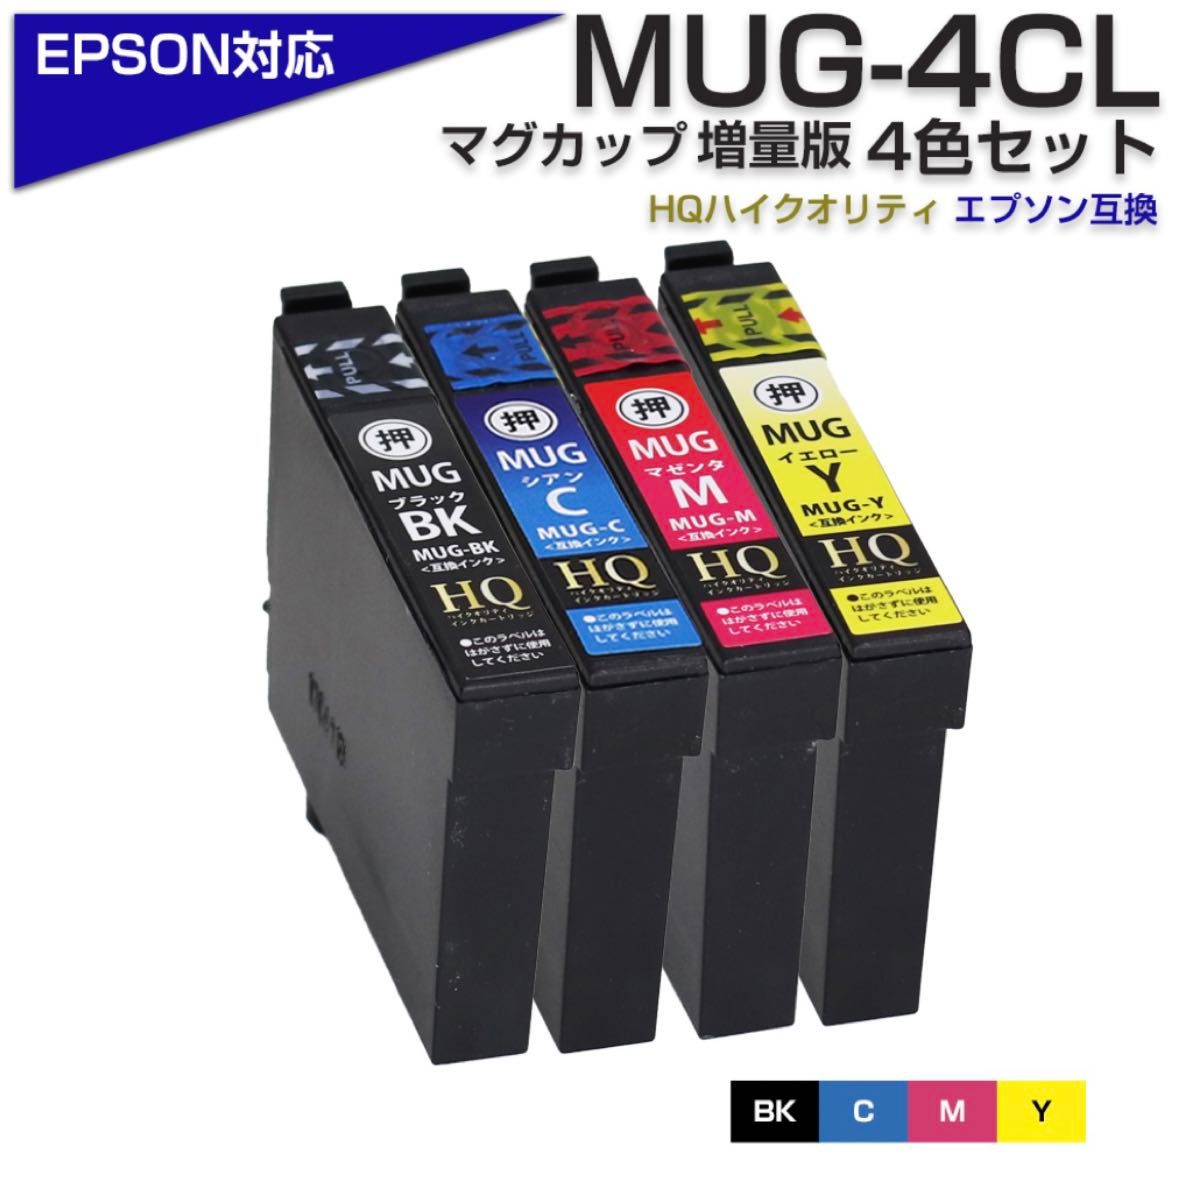 新品送料無料　MUG-4CL マグカップ 互換 エプソン プリンター EPSON 対応 インクカートリッジ 4色パック 